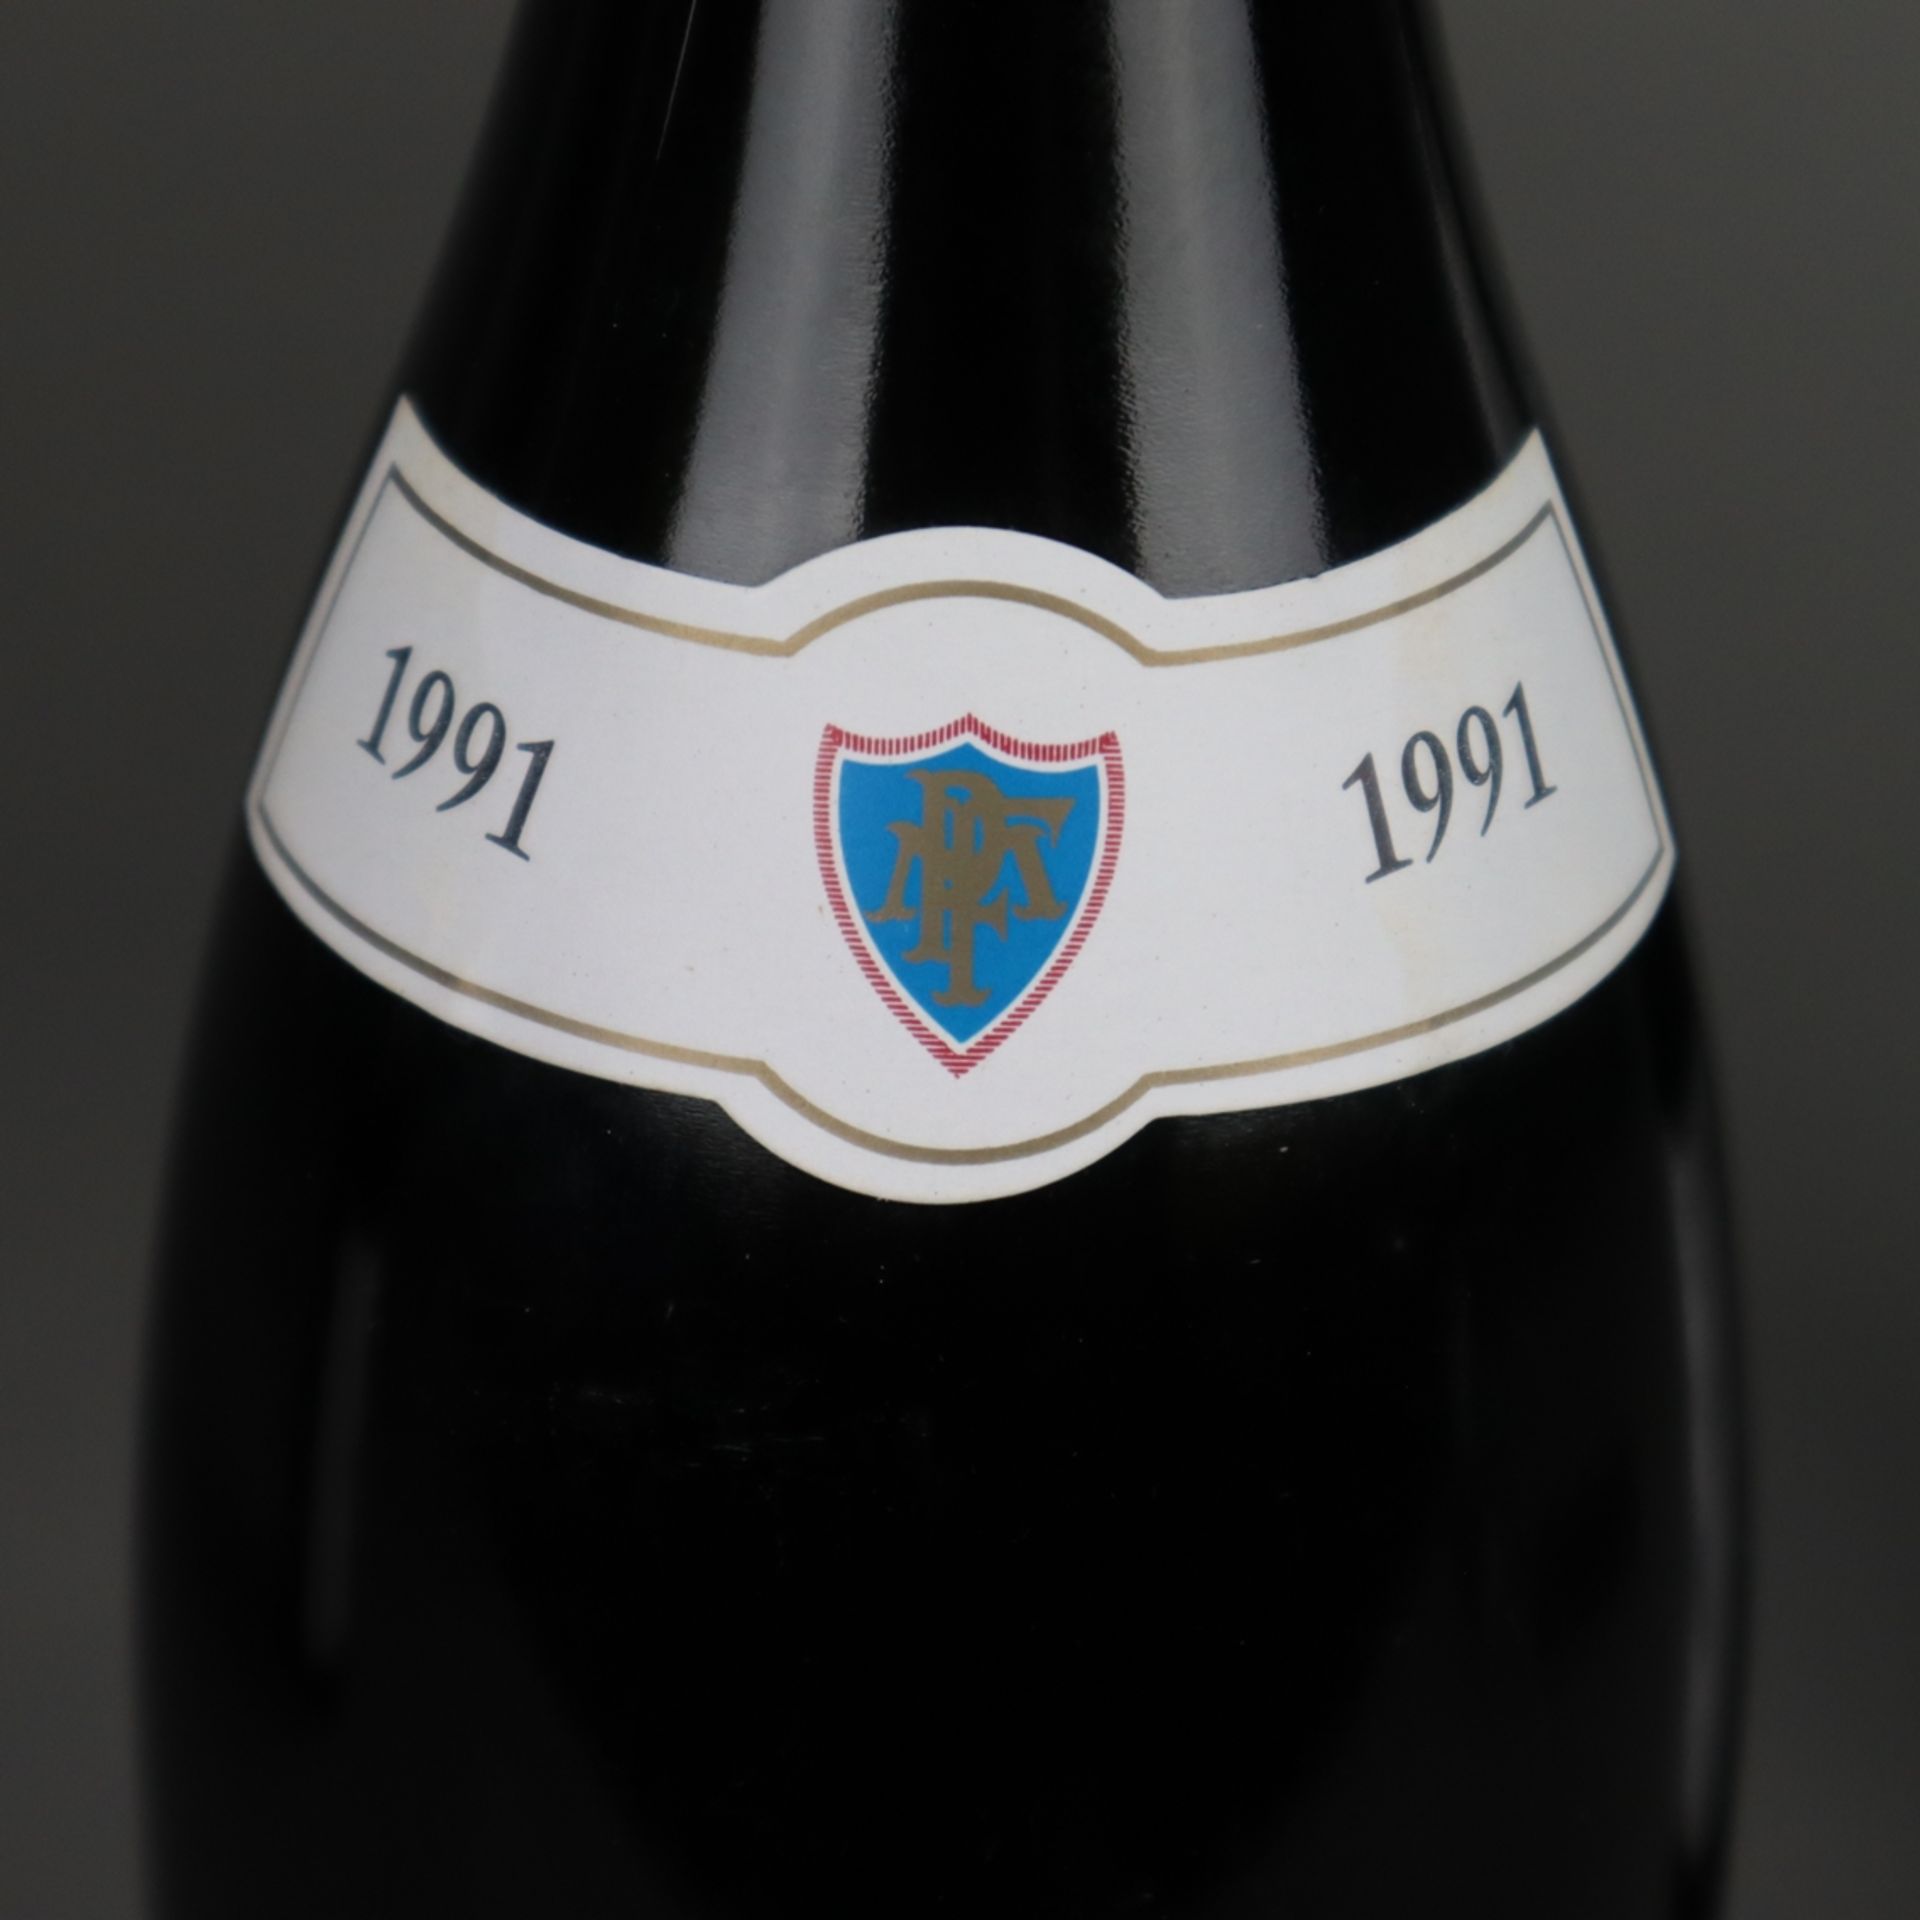 Weinkonvolut - 3 Flaschen: 1 x Savigny-les-Beaune 1991/ 1 x Beaune Premier Cru, - Bild 3 aus 6